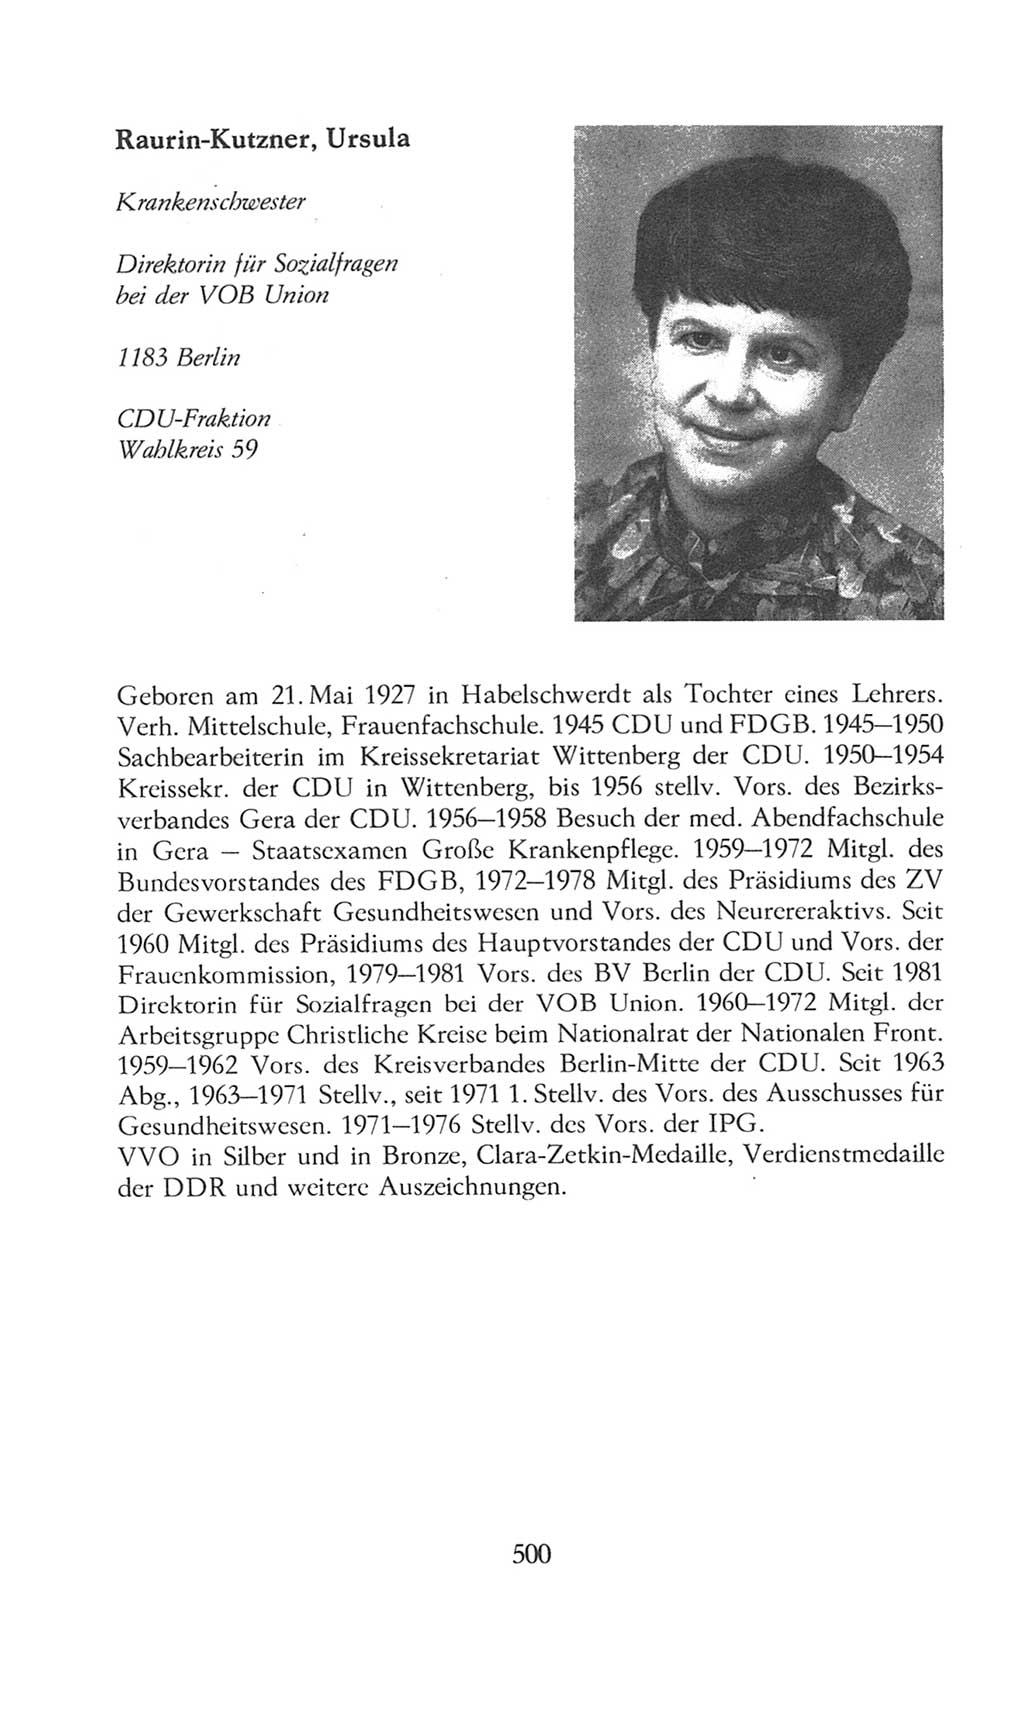 Volkskammer (VK) der Deutschen Demokratischen Republik (DDR), 8. Wahlperiode 1981-1986, Seite 500 (VK. DDR 8. WP. 1981-1986, S. 500)